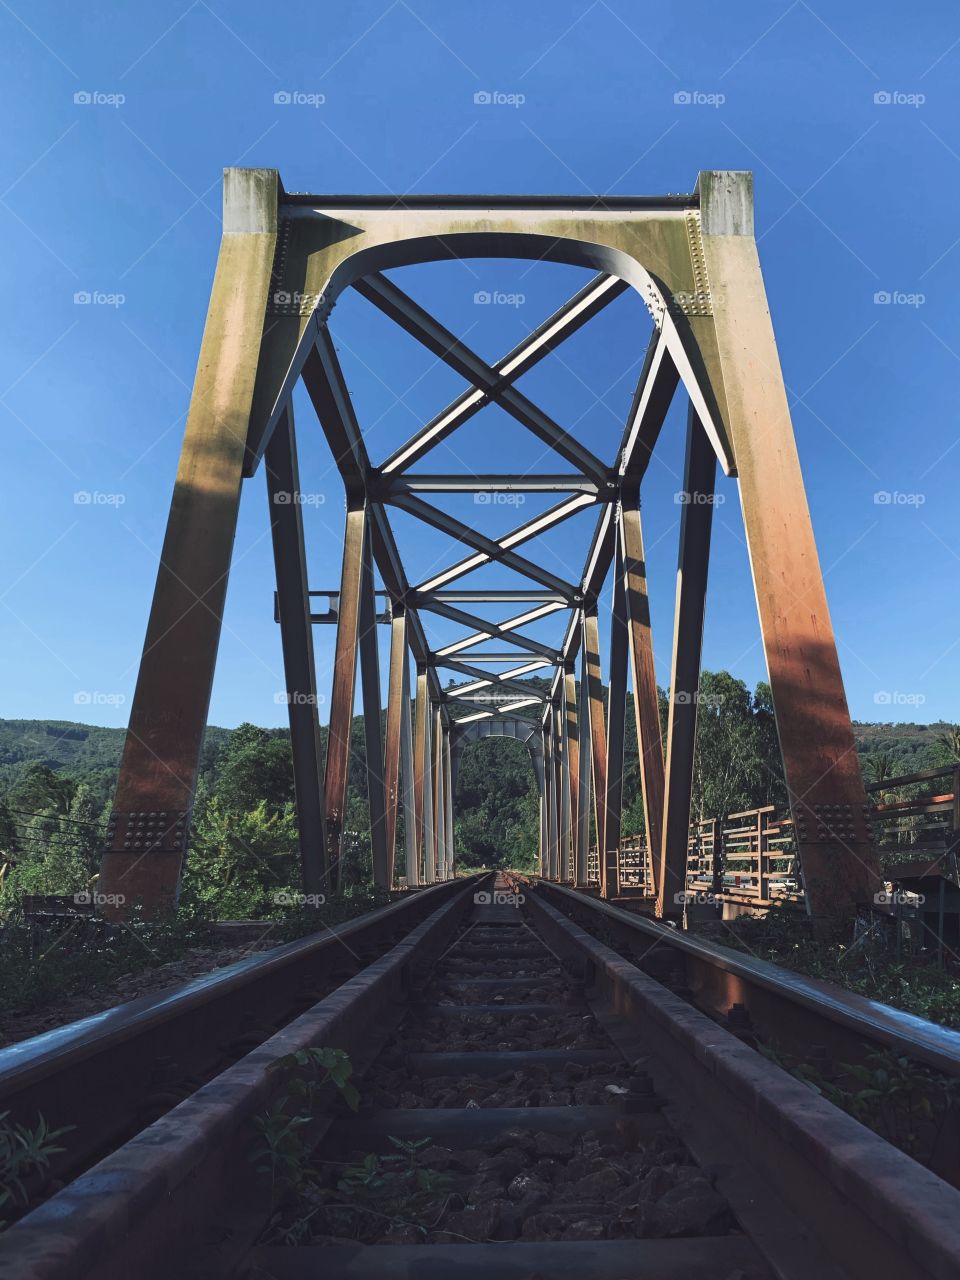 an iron bridge for trains